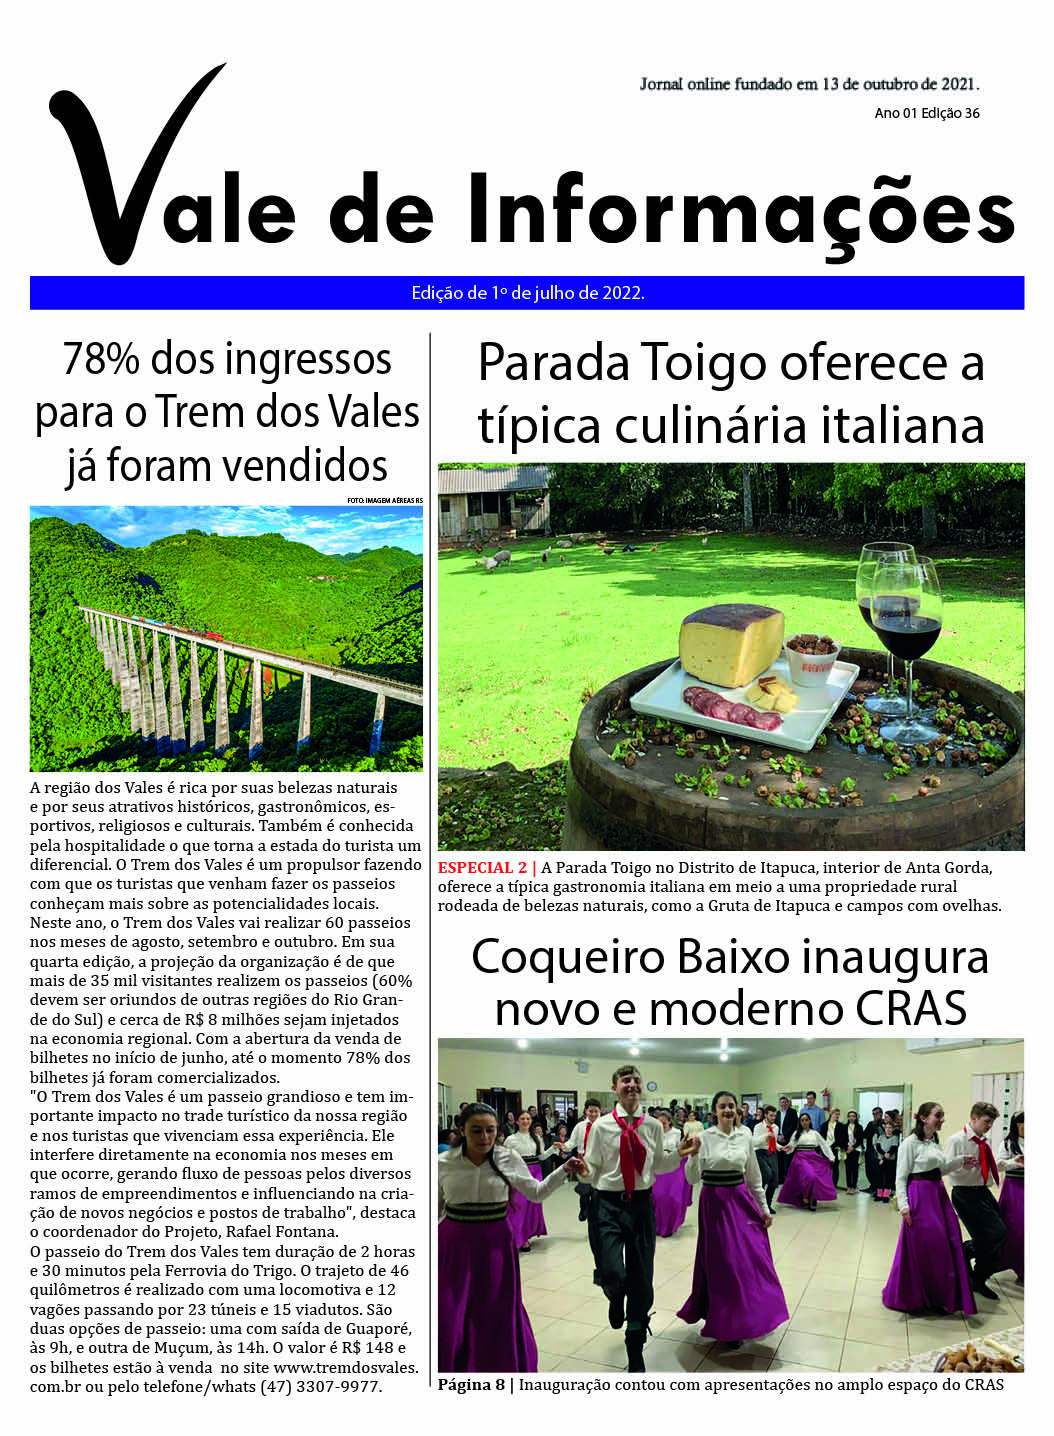 Jornal val do rio - Informação